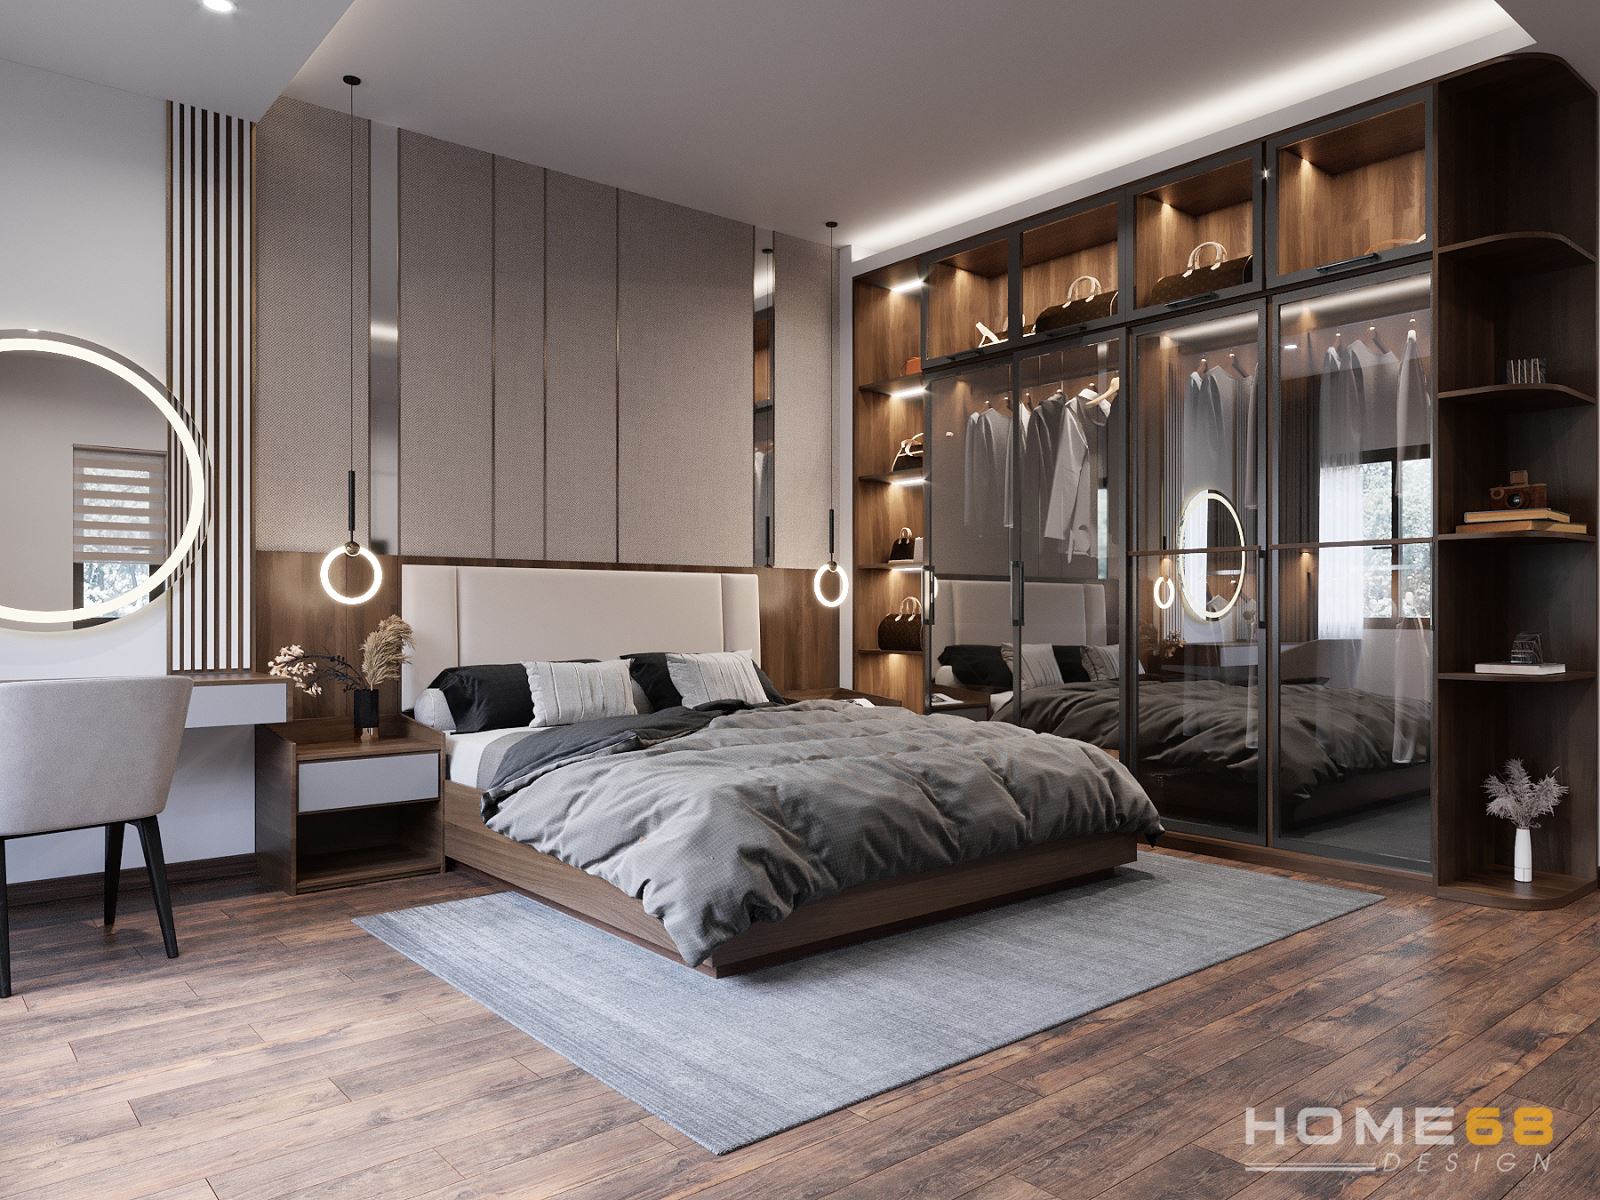 Không gian nội thât phòng ngủ sang trọng, tiện nghi với chất liệu gỗ